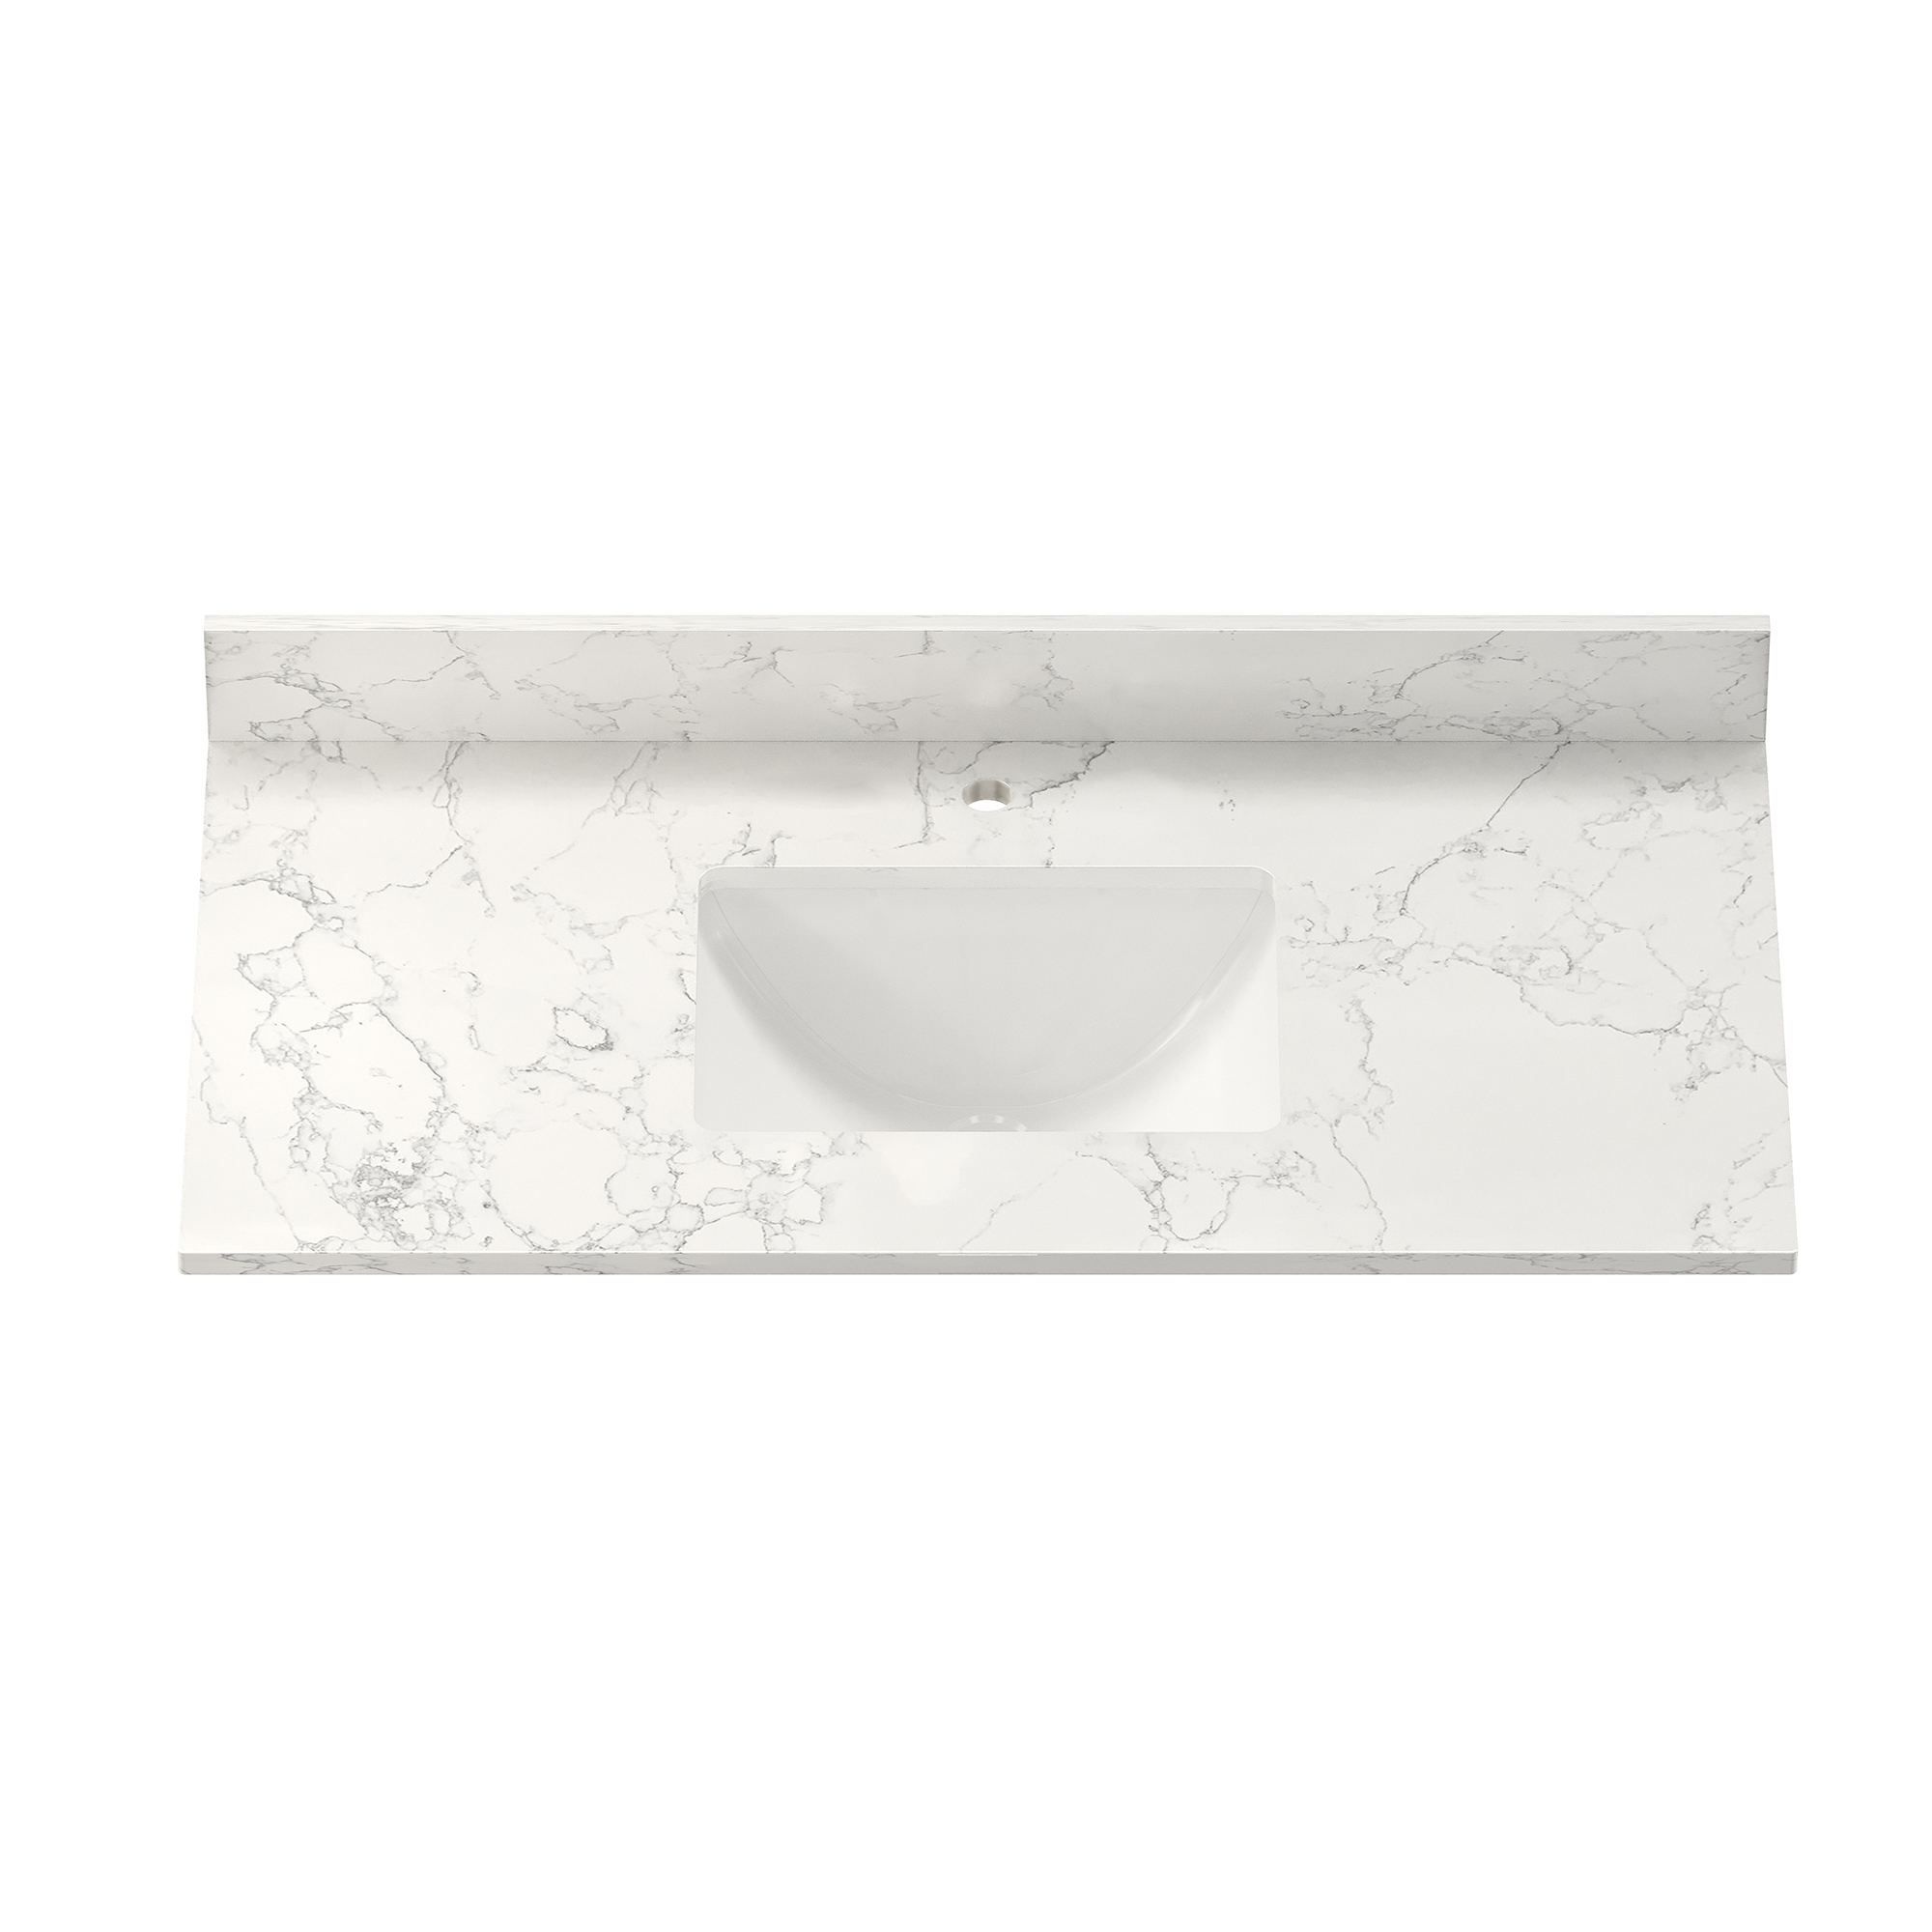 CASAINC 43" Carrara Jade/White Marble Single Sink Bathroom Vanity Top with 100mm High Backsplash, CUPC Certified